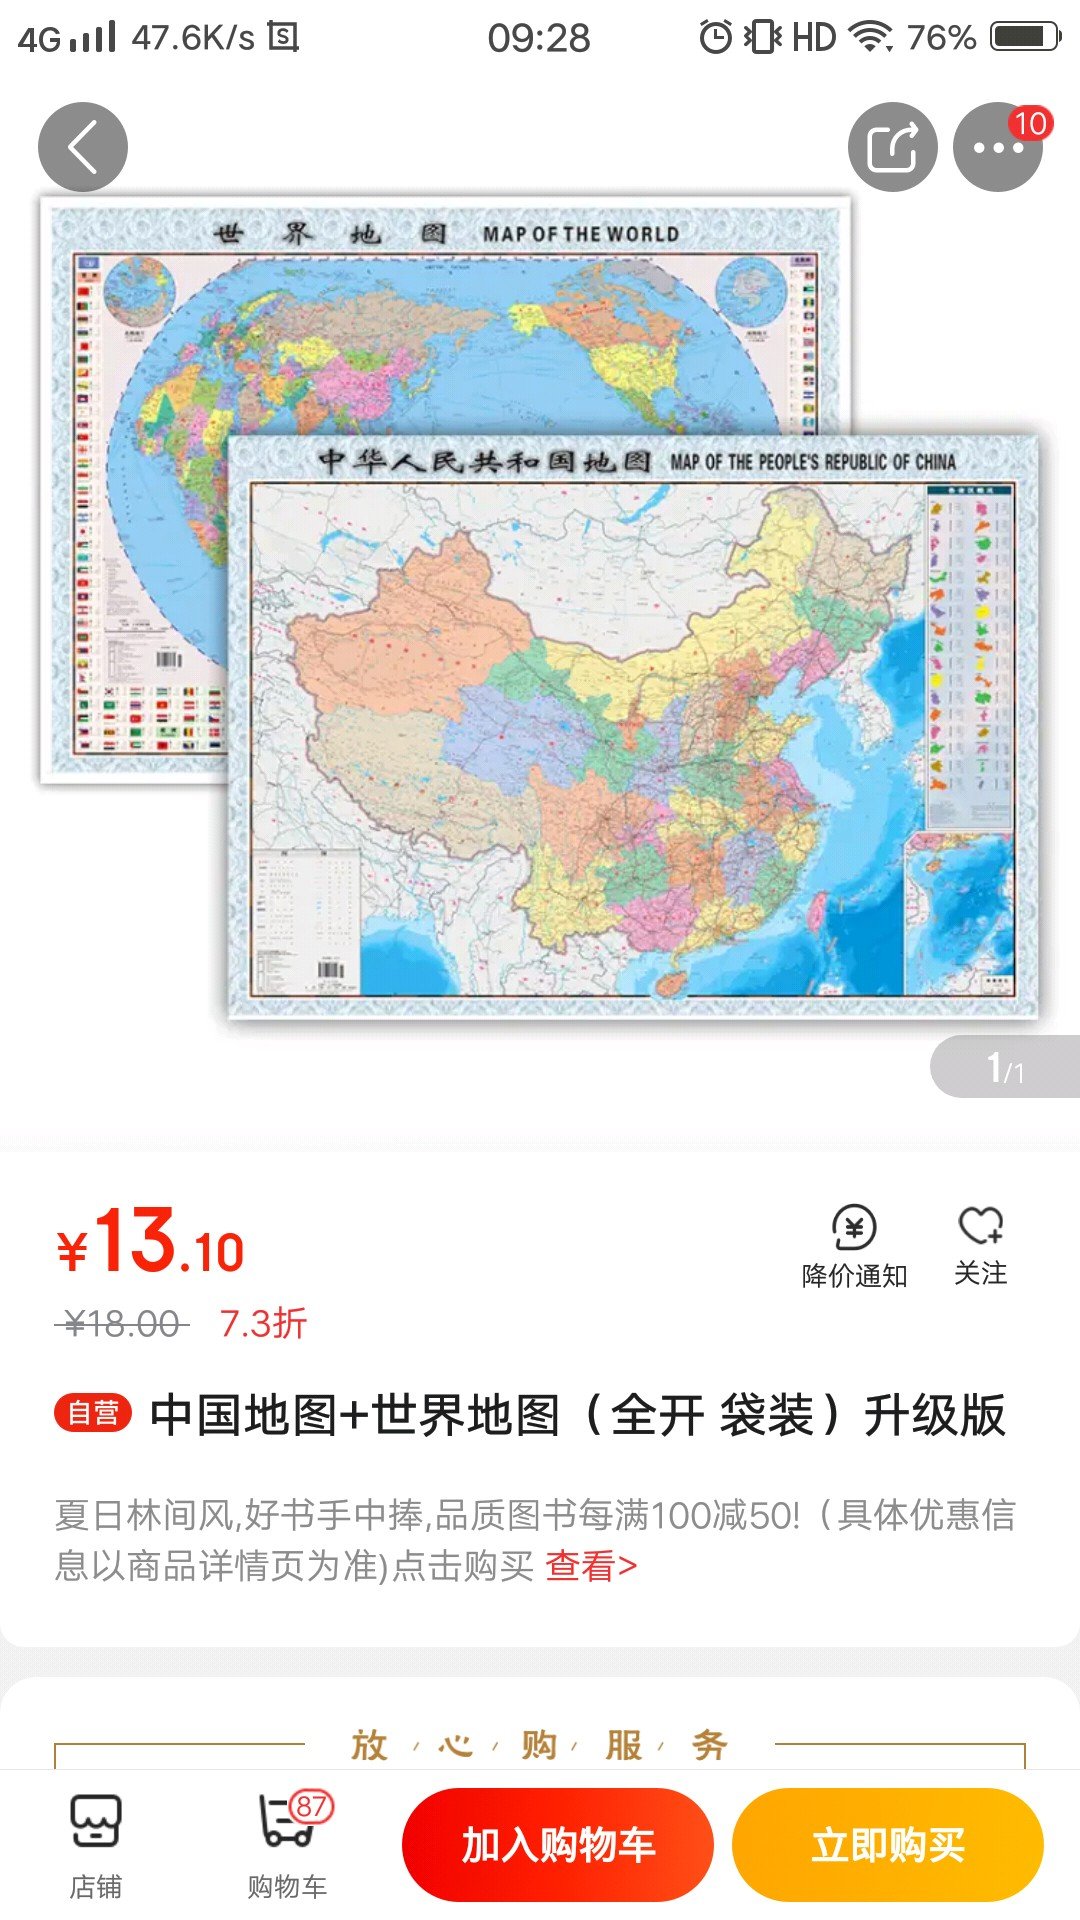 买个世界地图和中国地图给小朋友认识一下地球世界。从小多认识一下